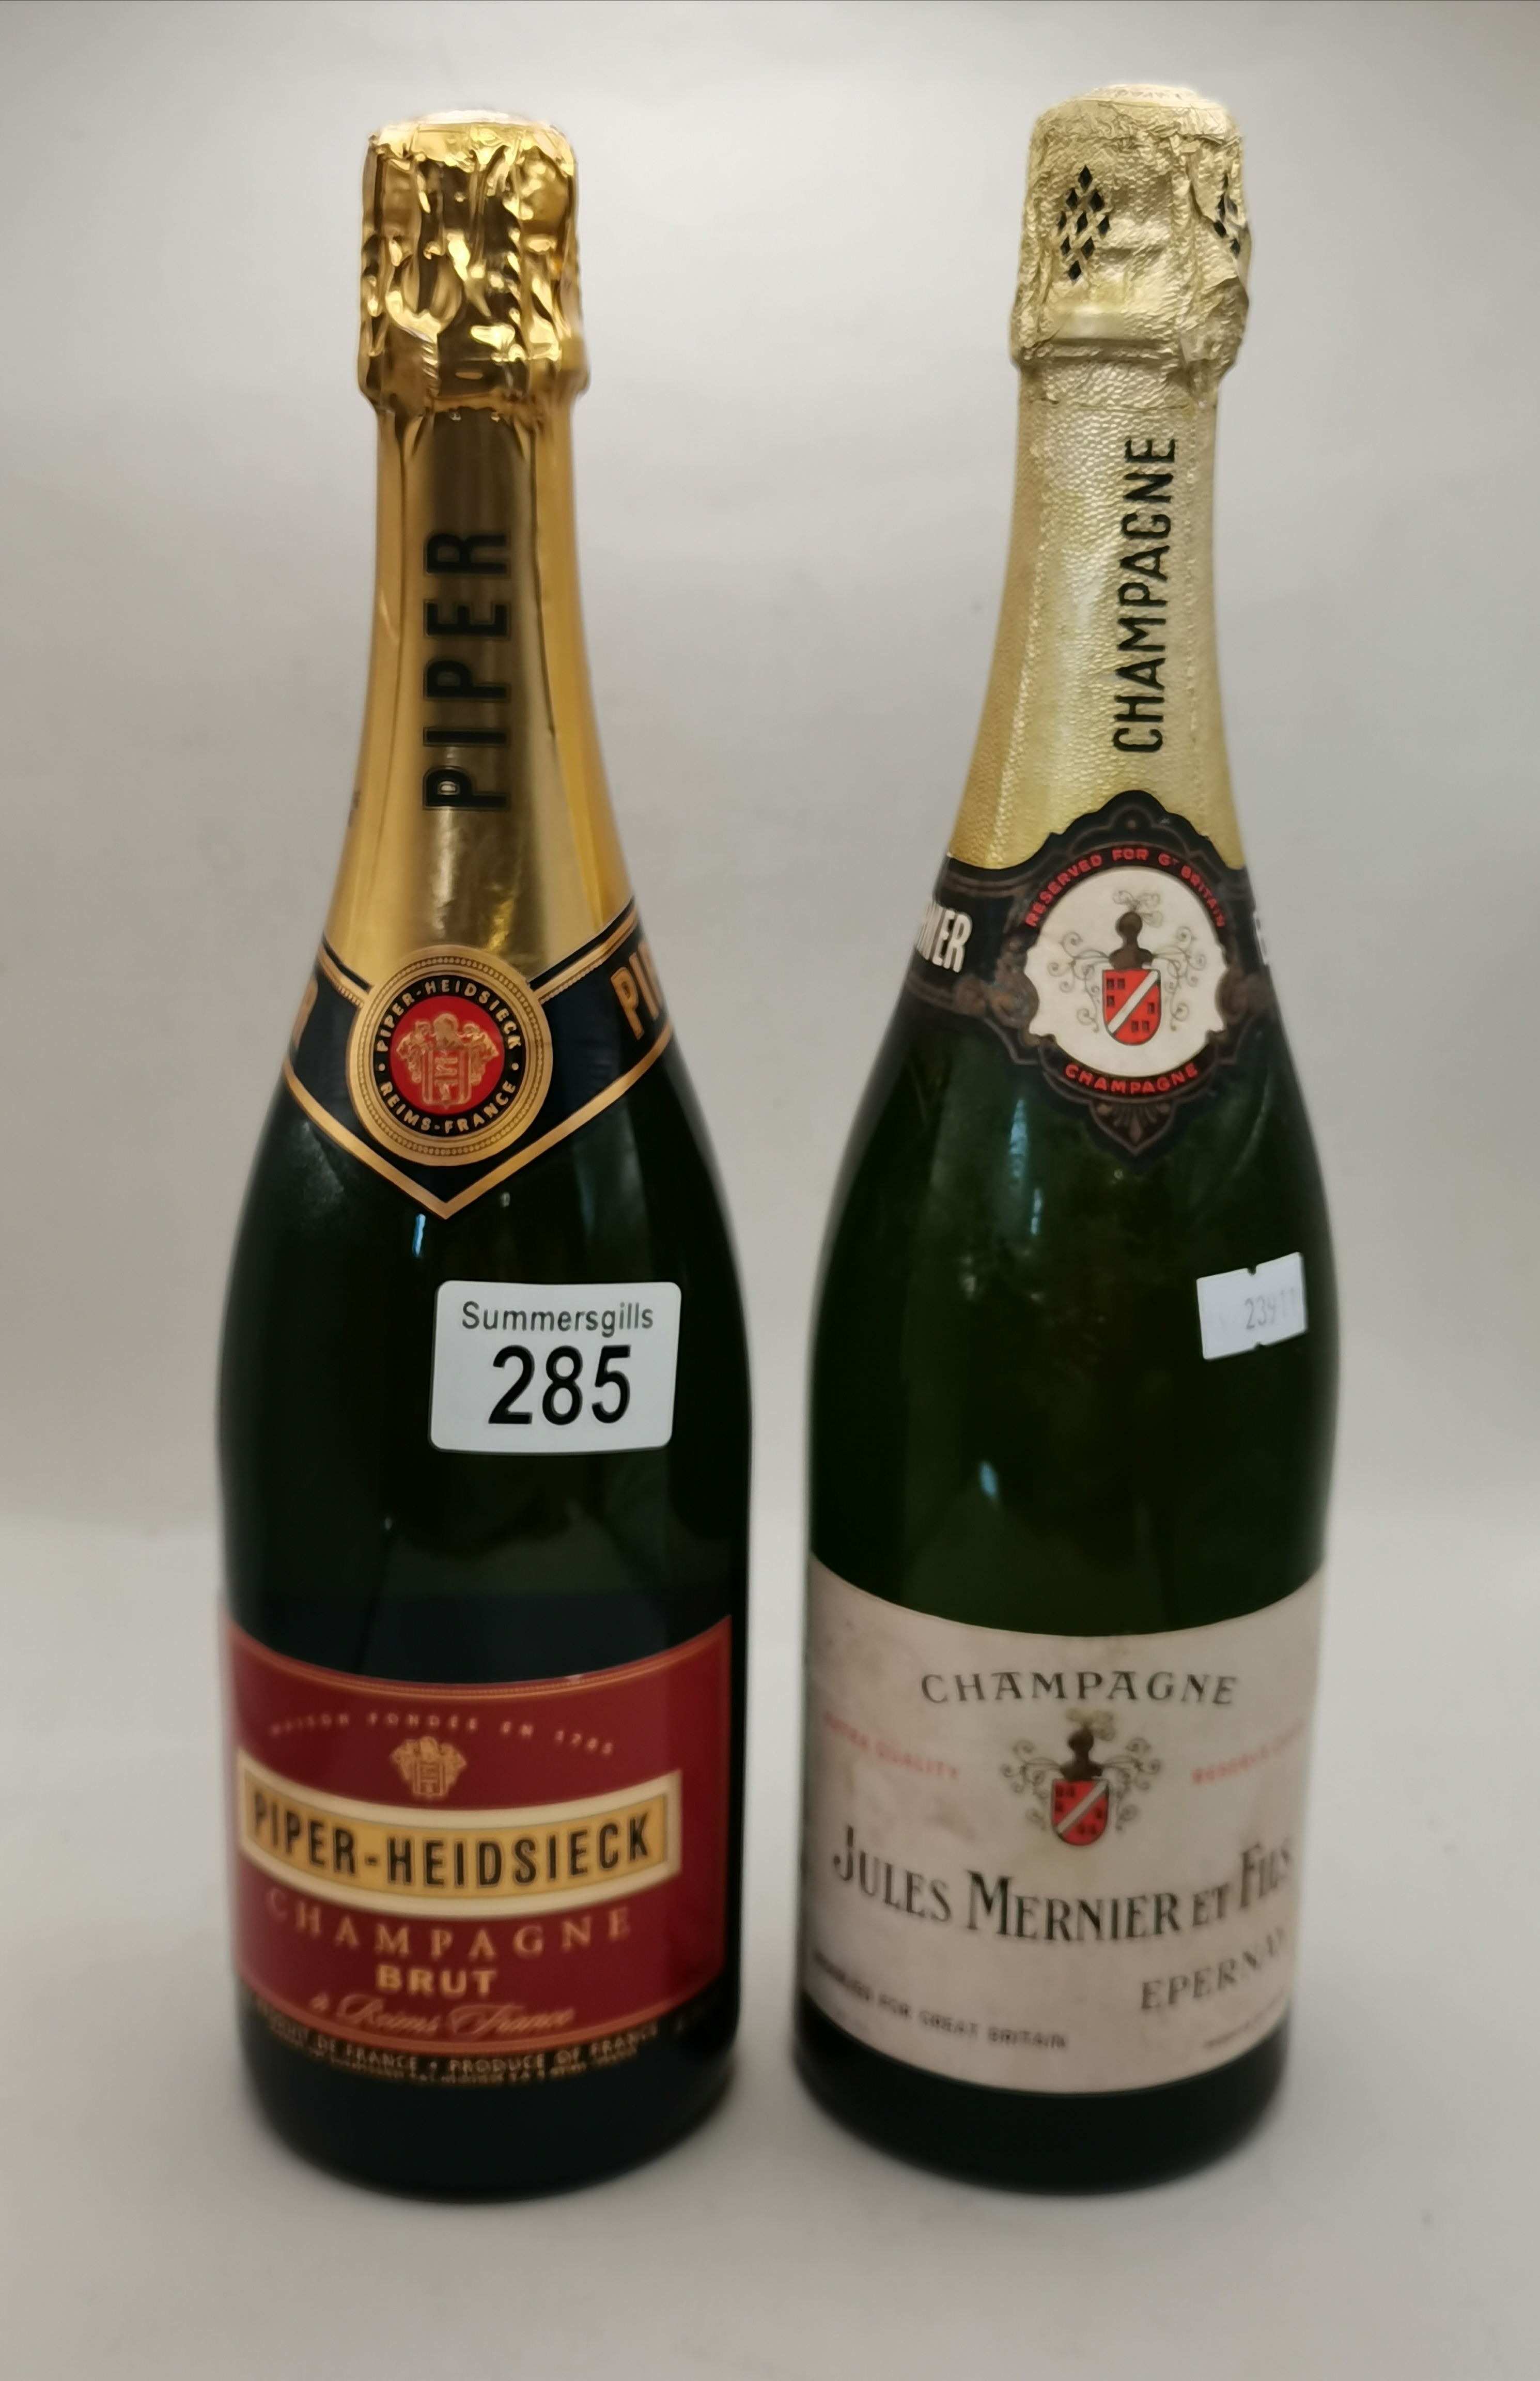 Bottle of Jules Mernier et Fils Champagne plus bottle of Piper-Heidsieck Champagne